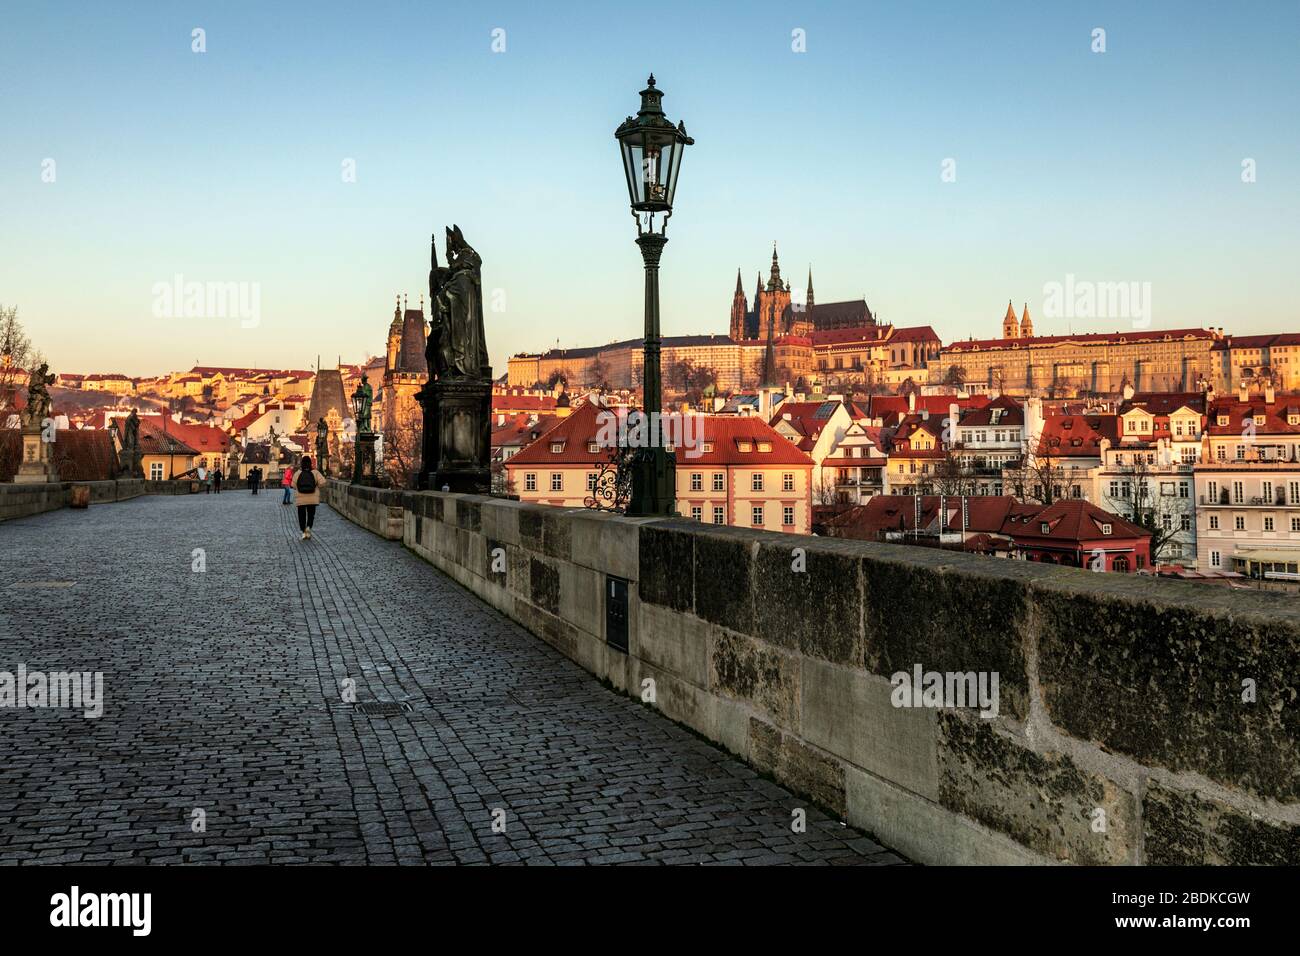 Tôt le matin sur le pont Charles avec la cathédrale Saint-Vitus et le quartier du château au-delà, Prague, République tchèque Banque D'Images